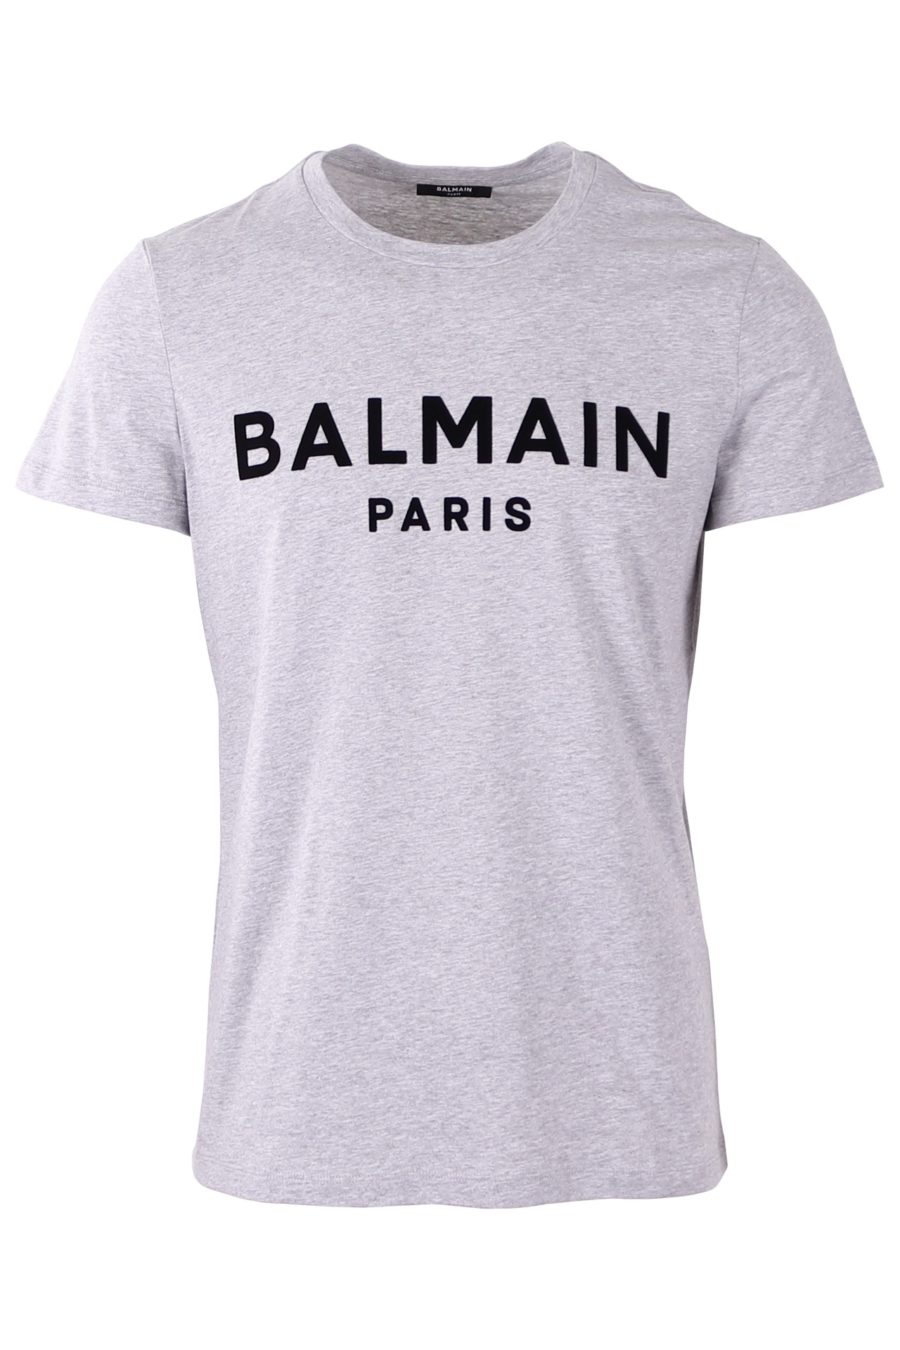 T-shirt Balmain cinzenta com logótipo felpudo - 06eab78591b1e4829dc4eb194f83d199d3cb2e62